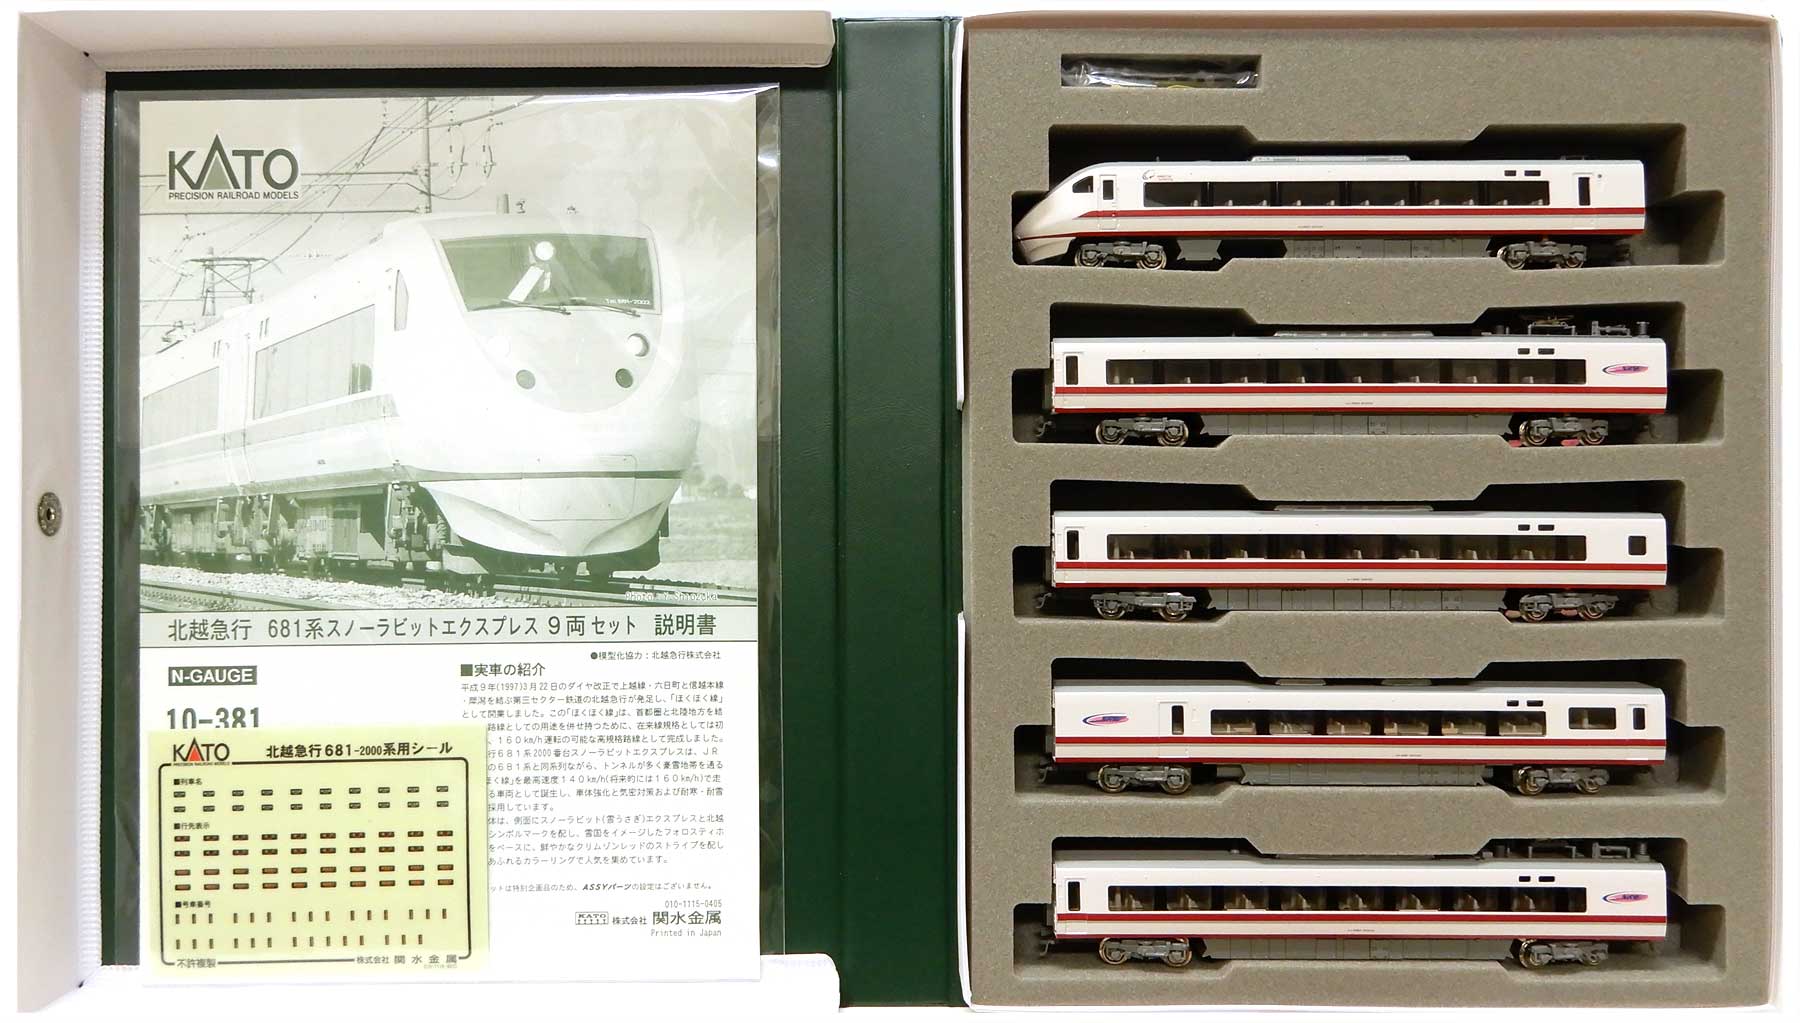 KATO Nゲージ 北越急行681系2000番台 スノーラビットエクスプレス 9両 ...